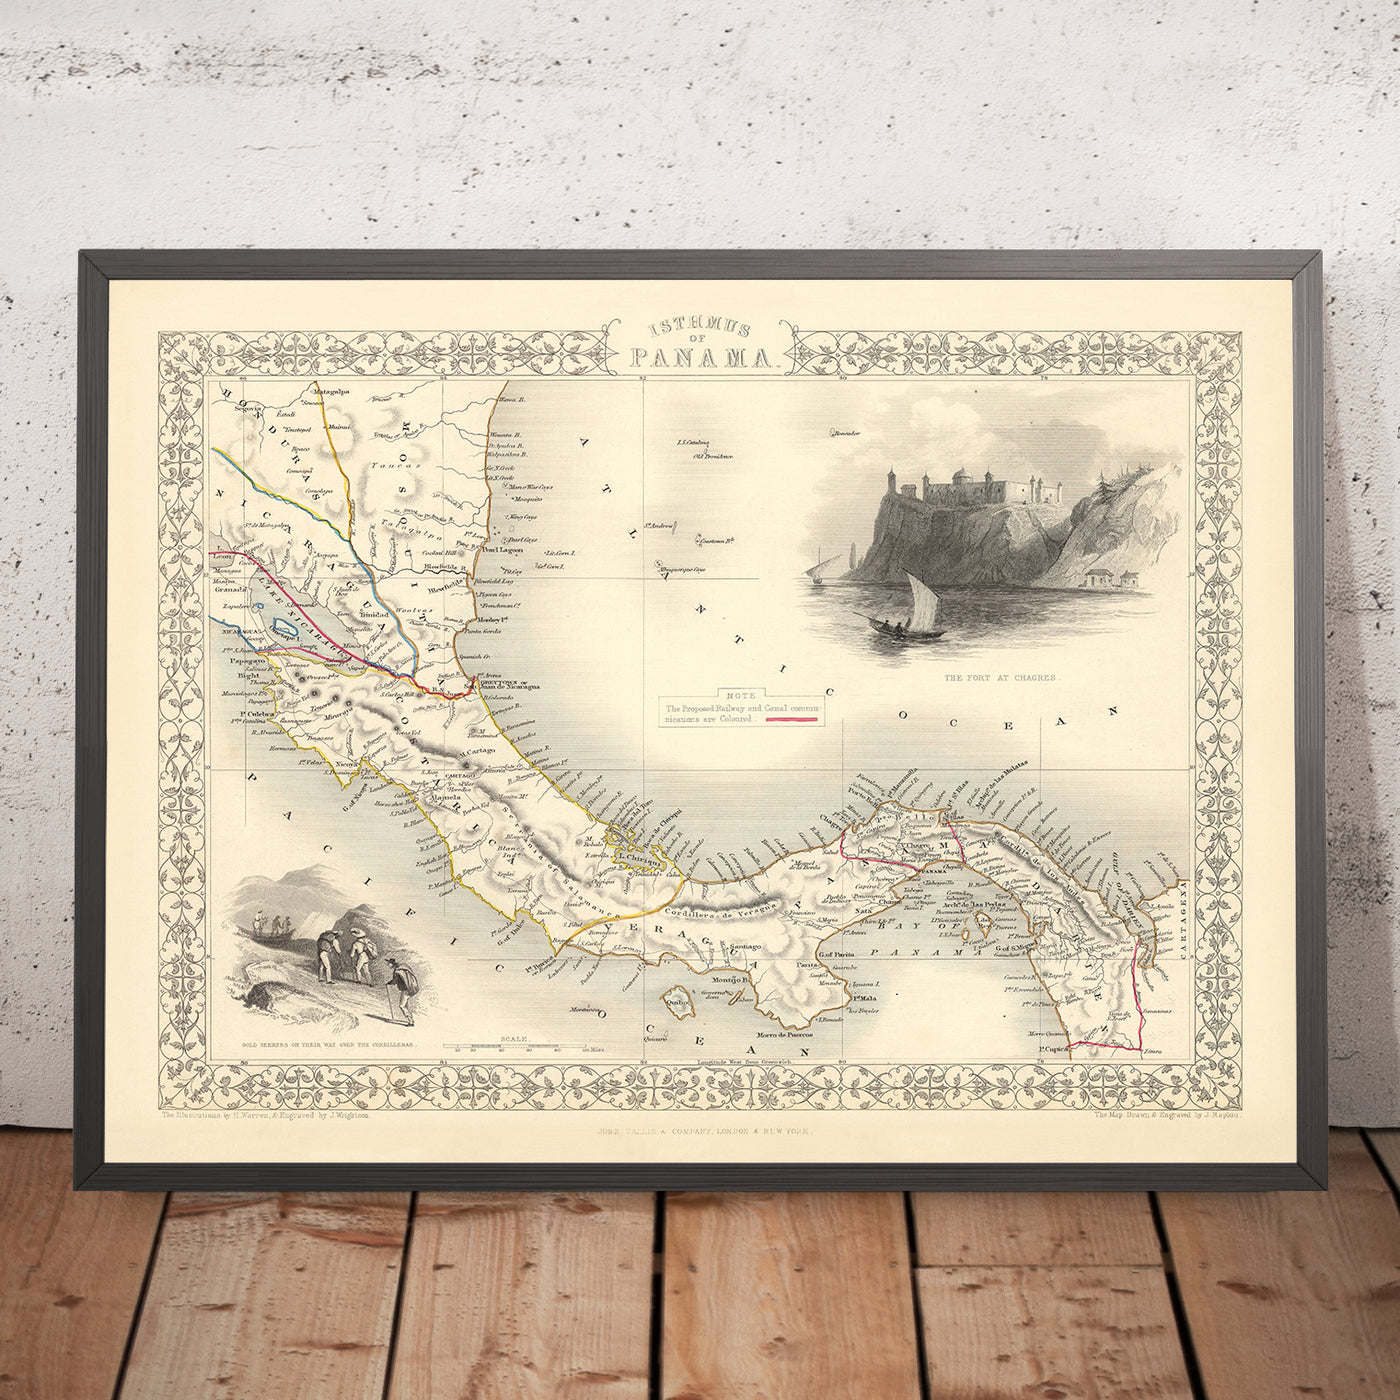 Alte detaillierte Karte von Panama von Tallis, 1851: Panamakanal, Pazifischer Ozean, Karibisches Meer, Fluss Chagres, Cordillera de San Blas